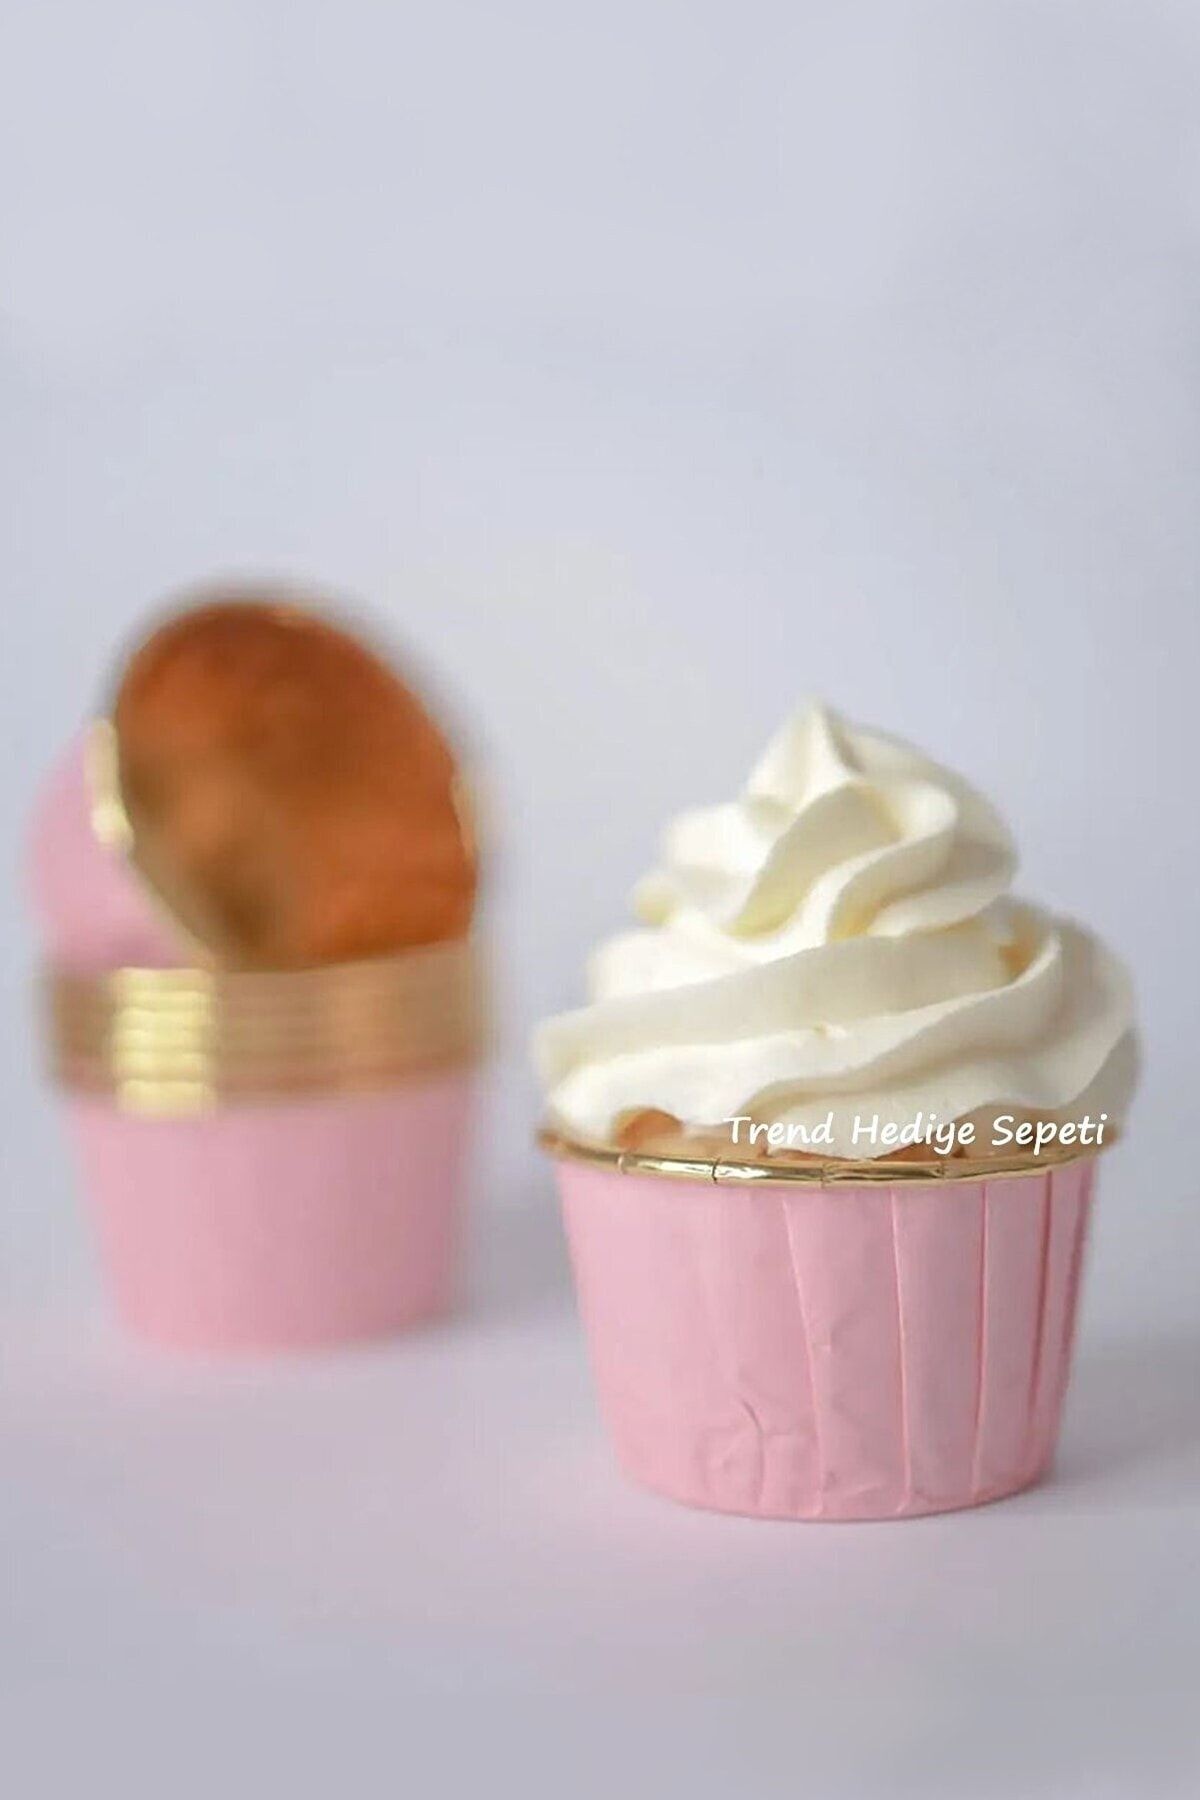 Trend Hediye Sepeti 25'li Pembe Gold Muffin Kek Kapsülü Cupcake Kalıbı